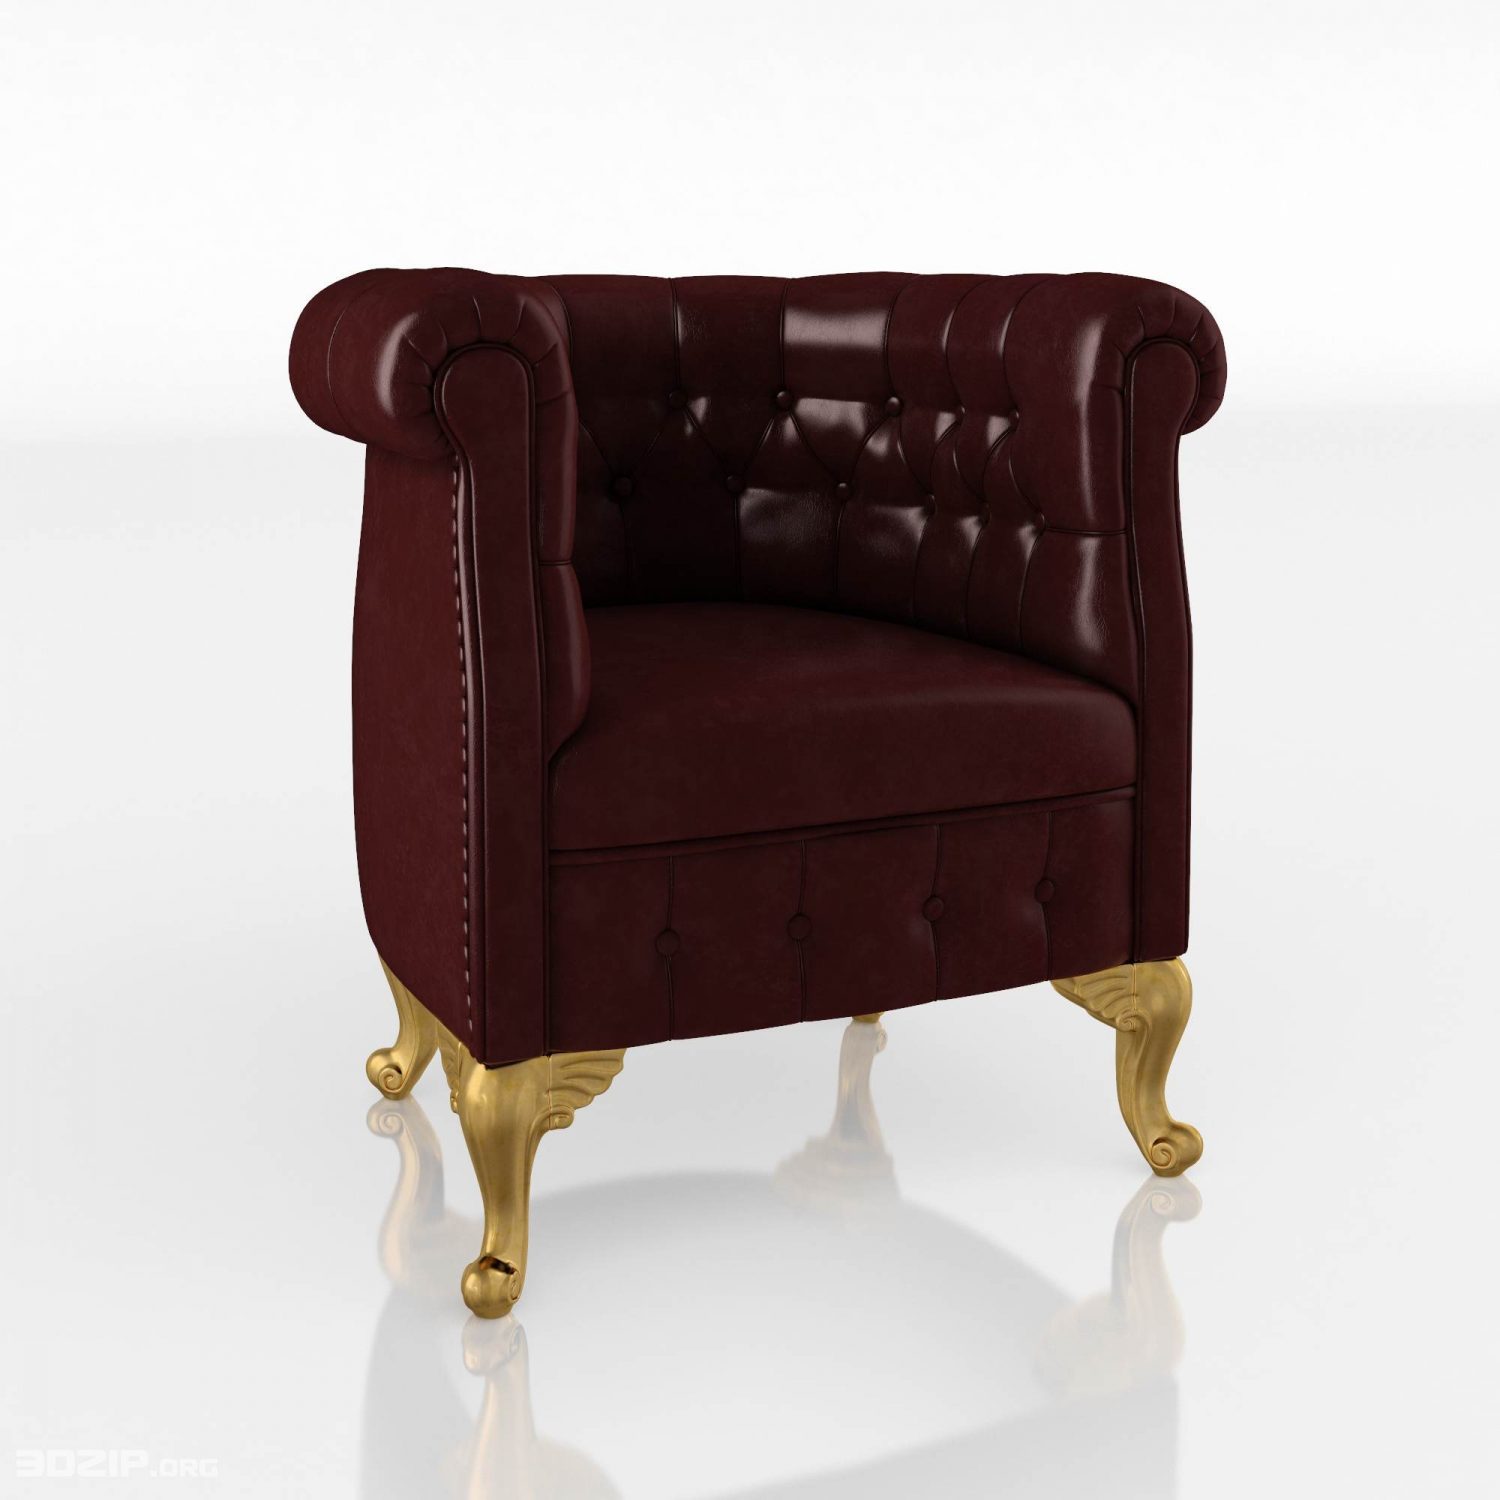 13424 Chesterfield armchair – ModeneseGaston